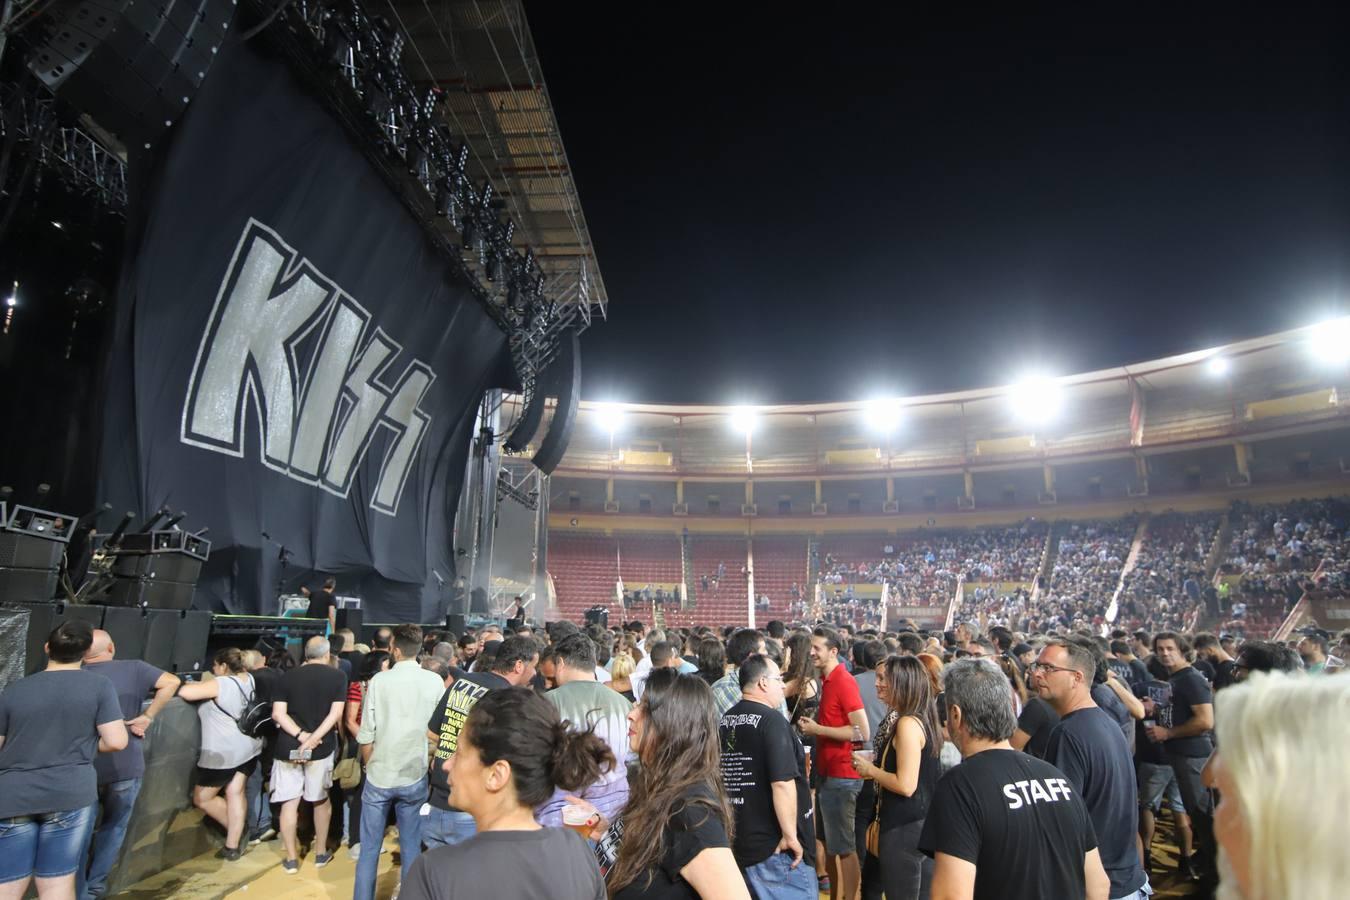 Festival de la Guitarra de Córdoba de 2018 | El concierto de Kiss en imágenes